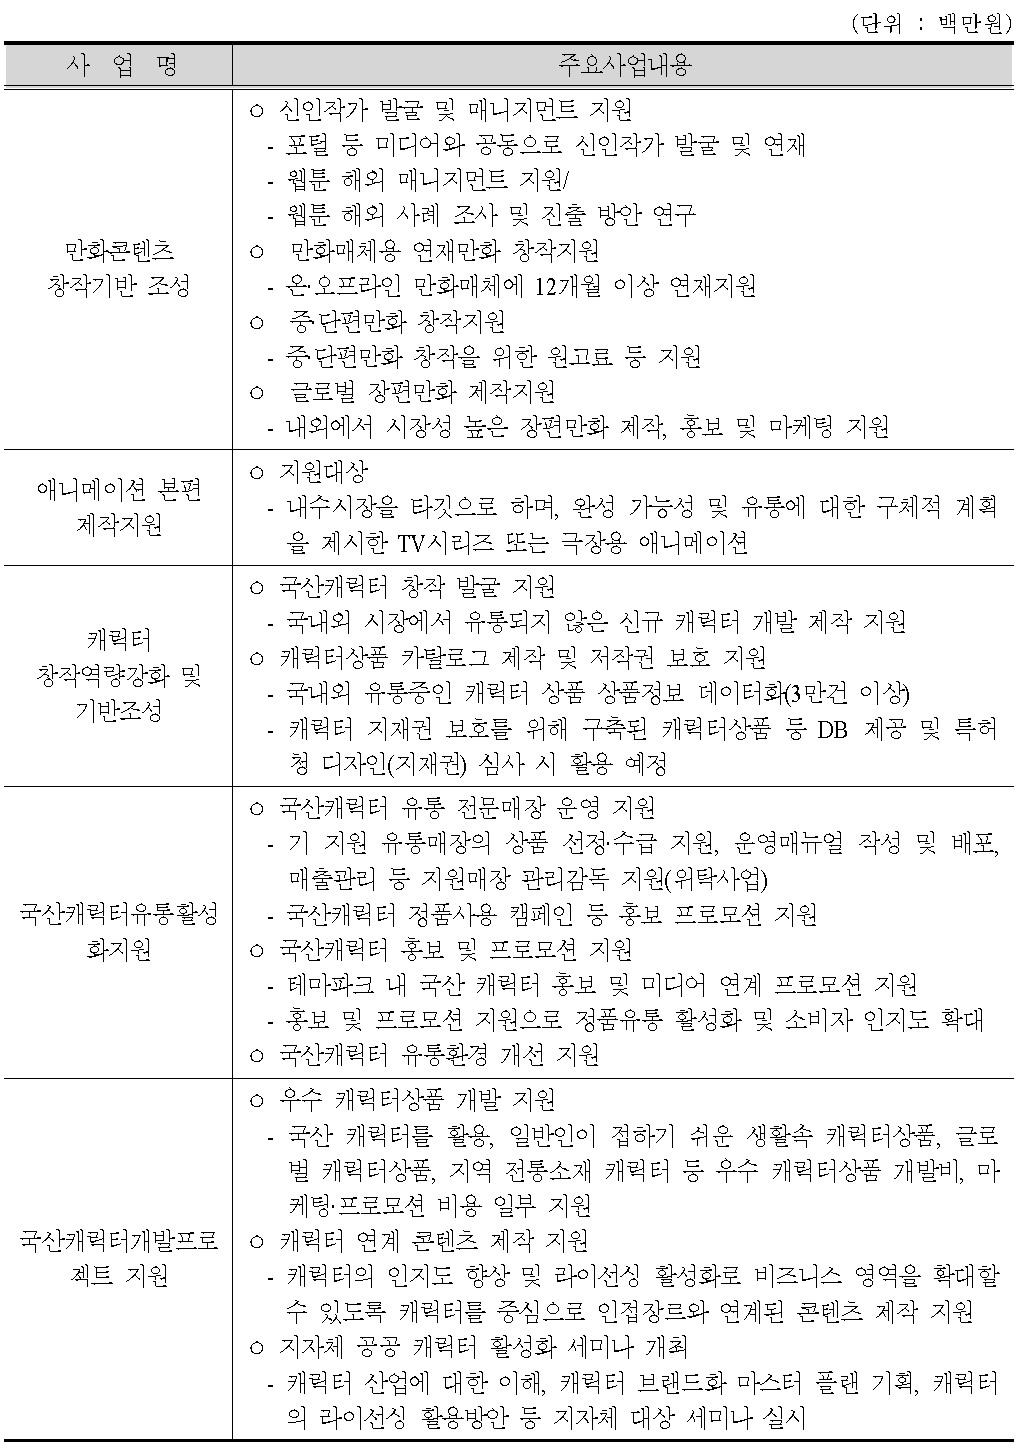 한국콘텐츠진흥원 만화애니메이션캐릭터 관련 사업(2013년 기준)